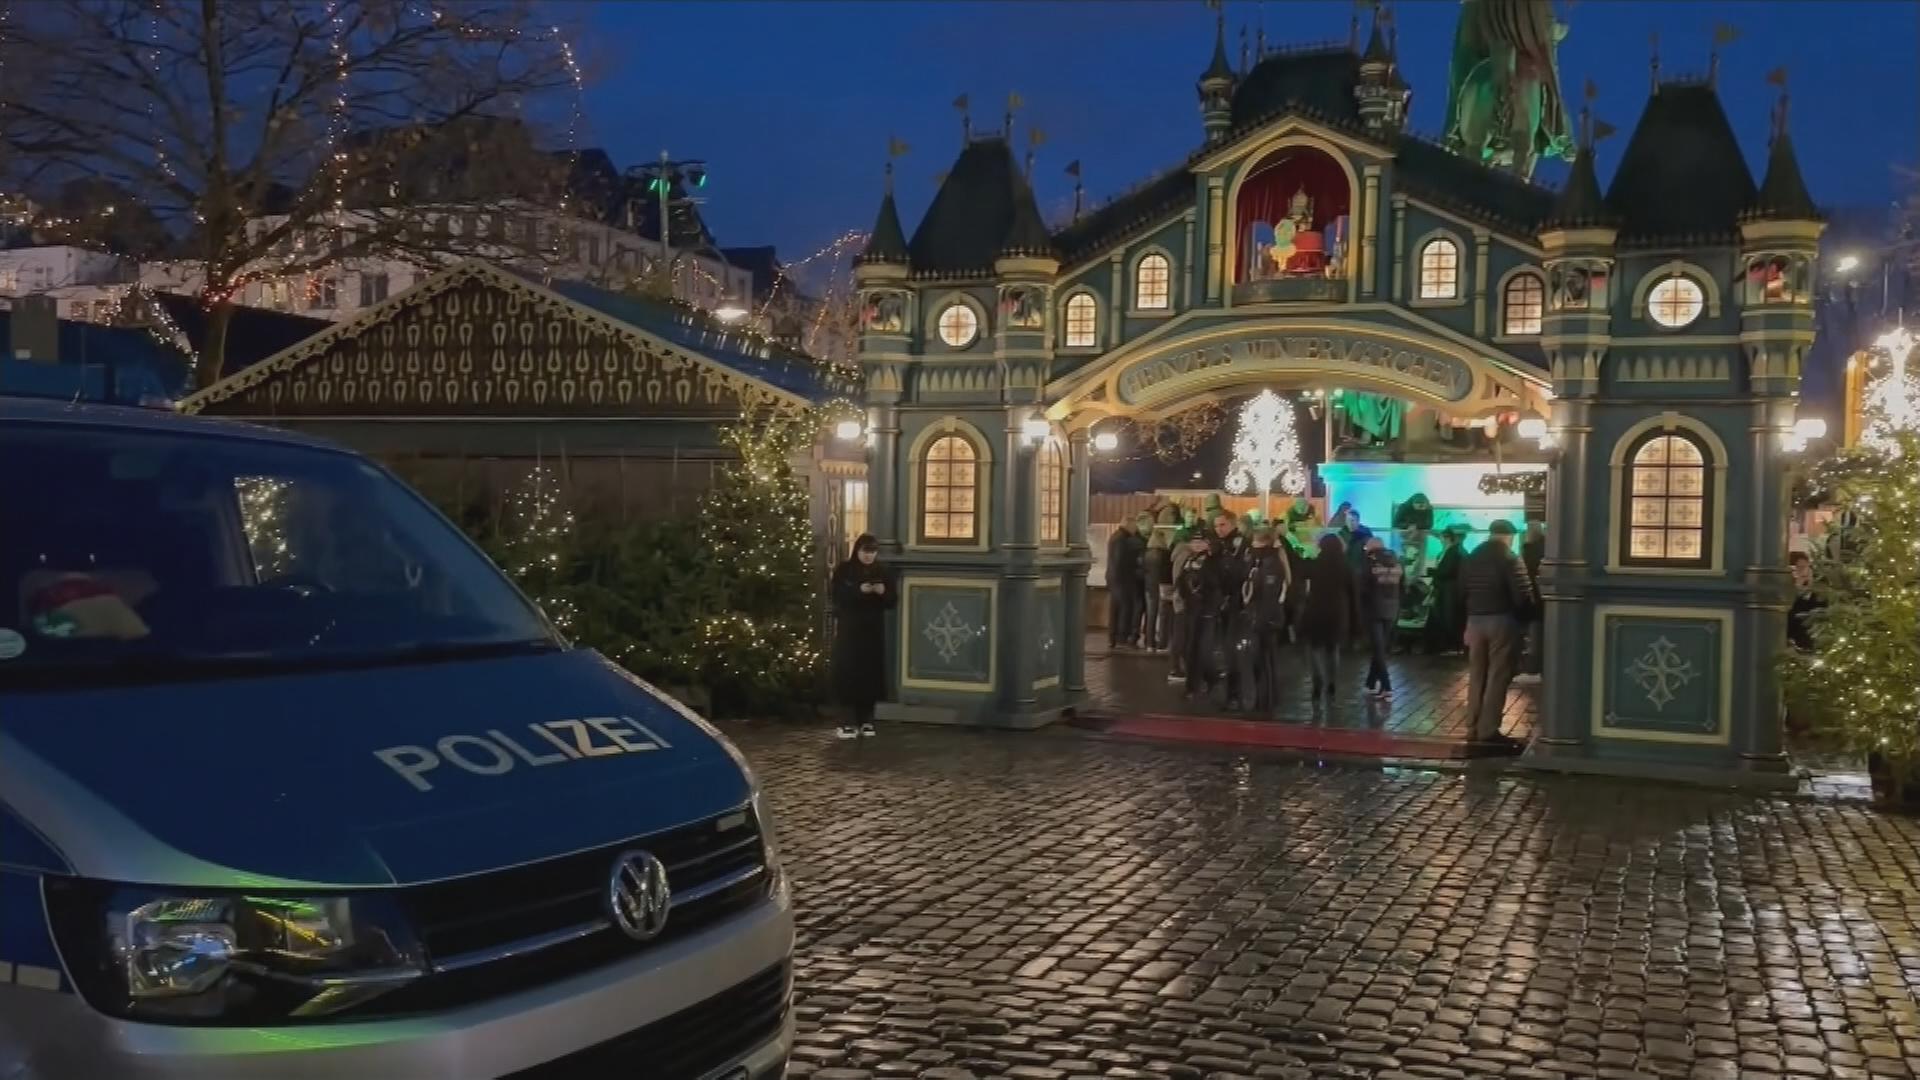 Ein Polizeiauto steht auf dem Weihnachtsmarkt.